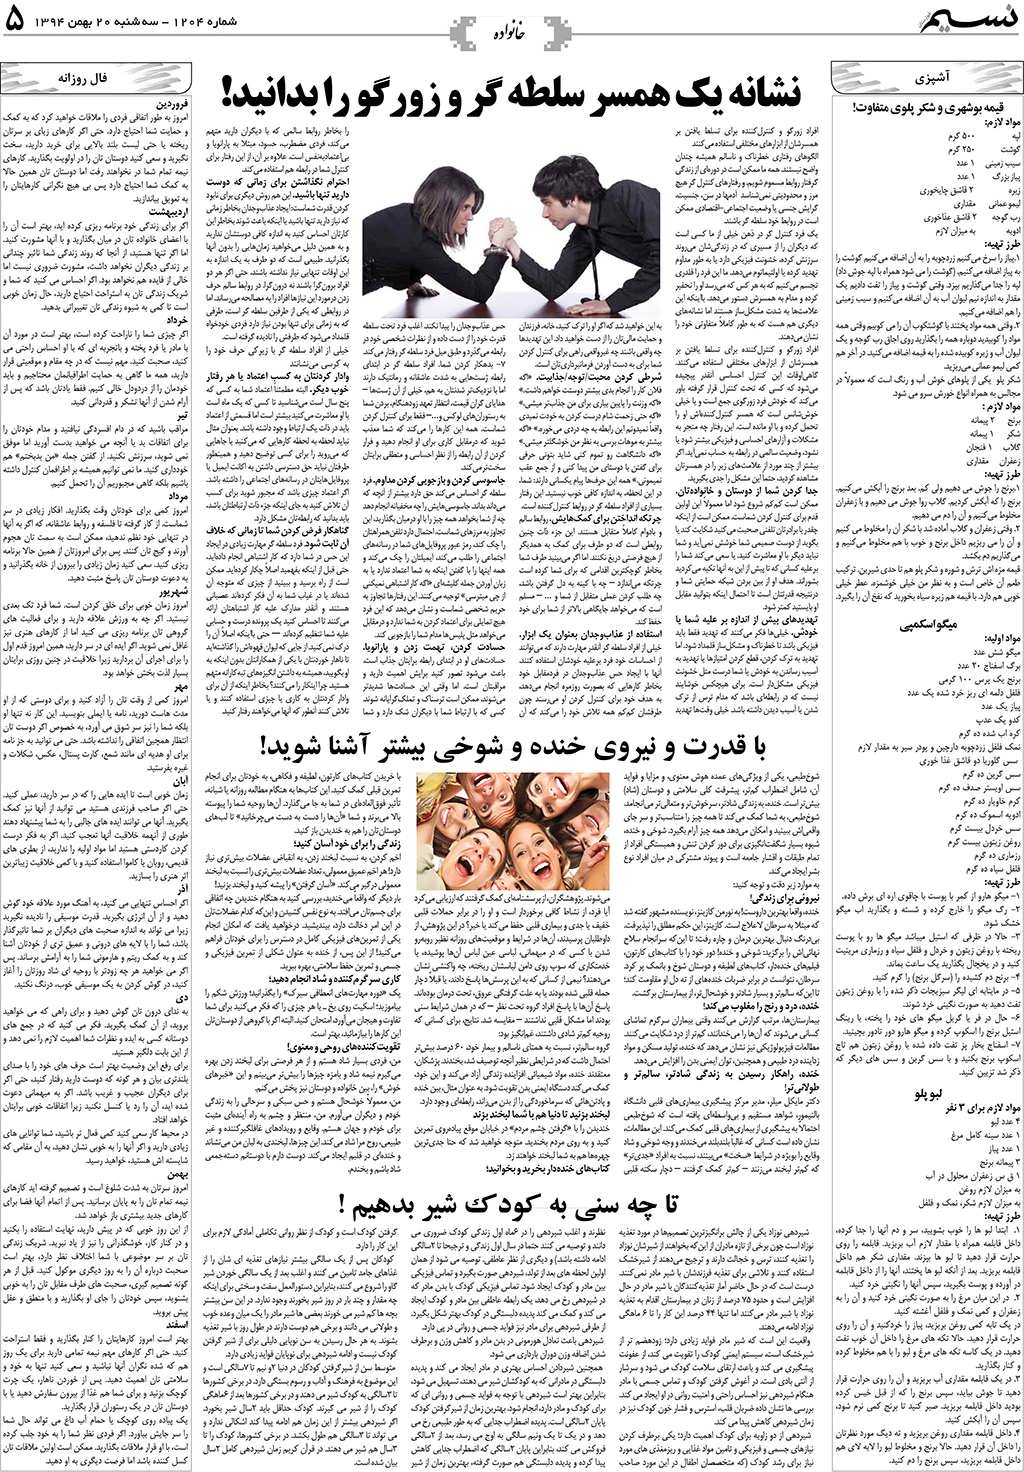 صفحه خانواده روزنامه نسیم شماره 1204